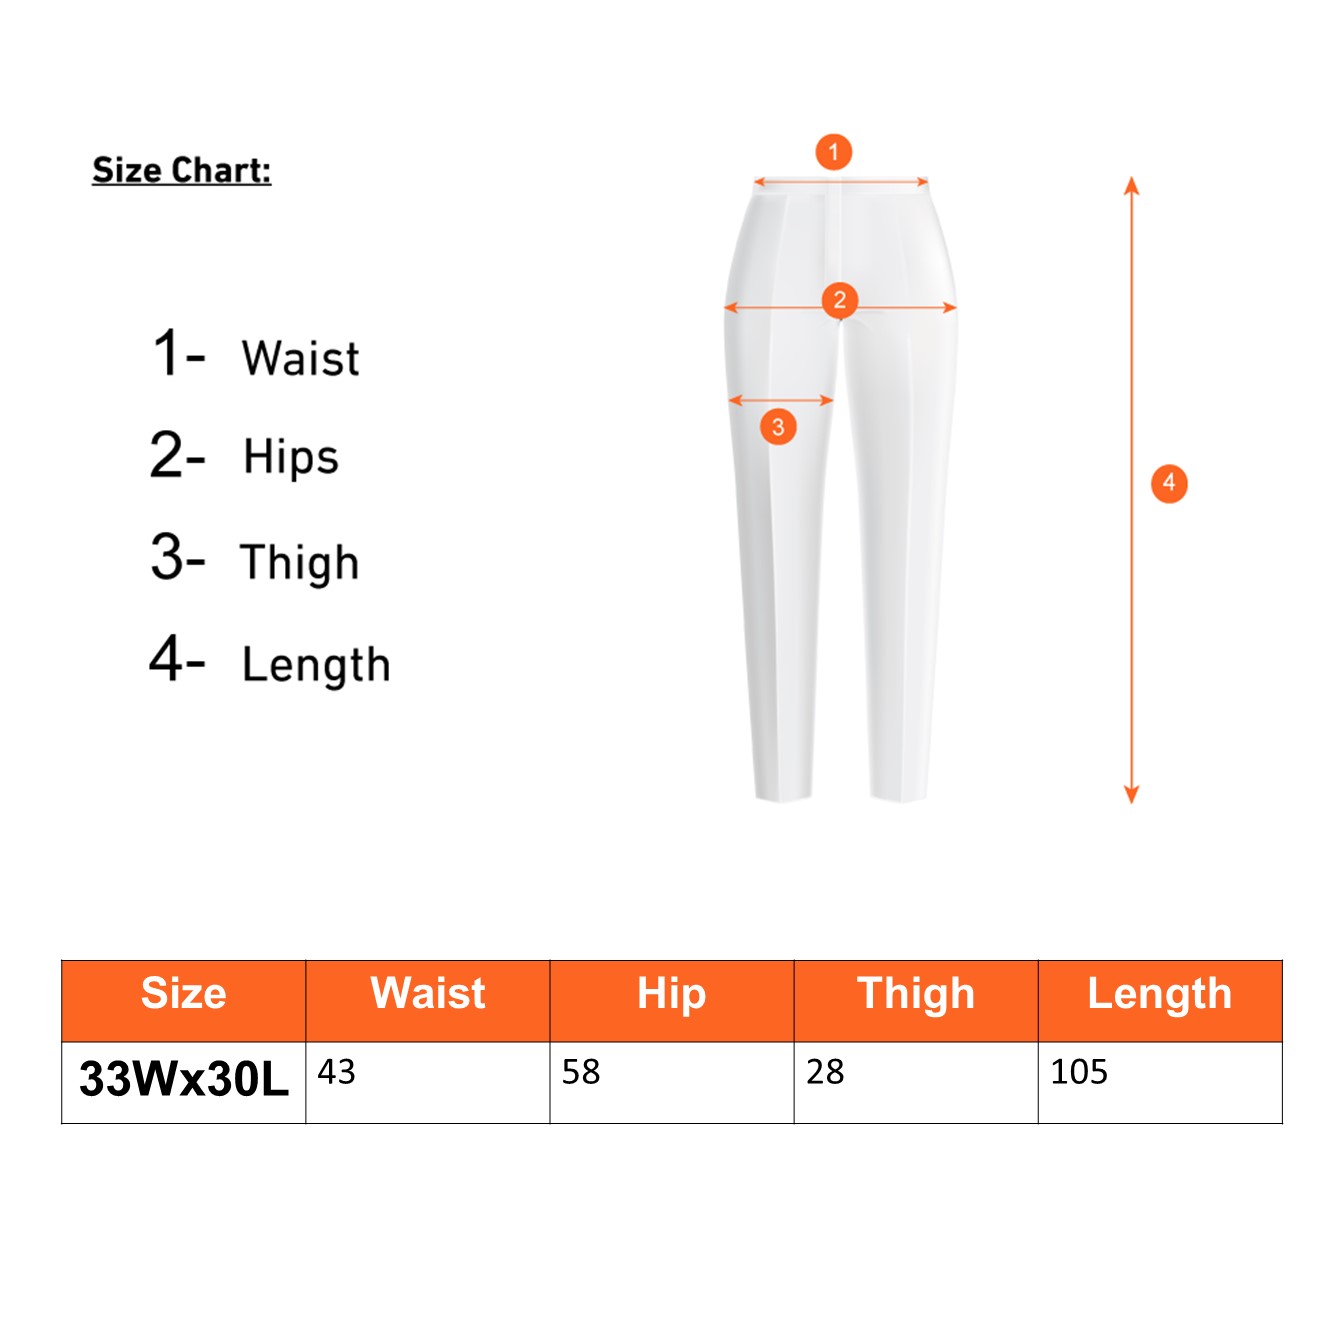 Amazon Essentials Men's Expandable Waist Classic-Fit Flat-Front Dress Pants